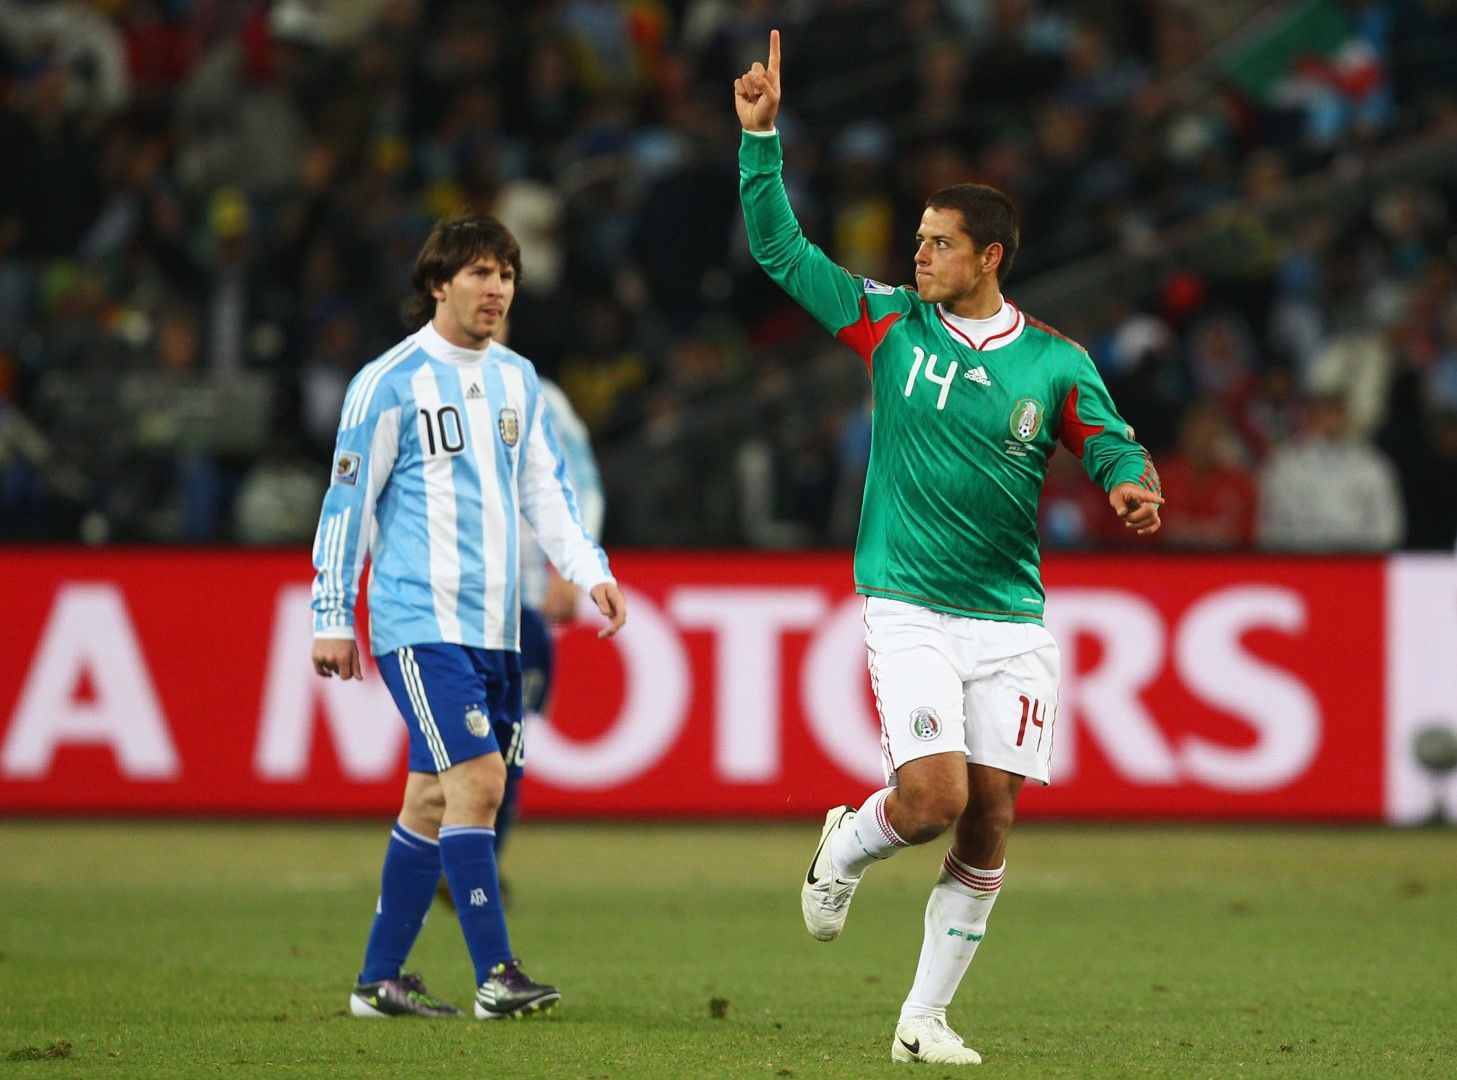 27 юни 2010 г. Меси играе 120 минути срещу Мексико в осминафинала, но не е ефективен. Все пак Аржентина крачи напред с 3:1. За да унизителното 0:4 от Германия на четвъртфинал, когато Лео е незабележим.